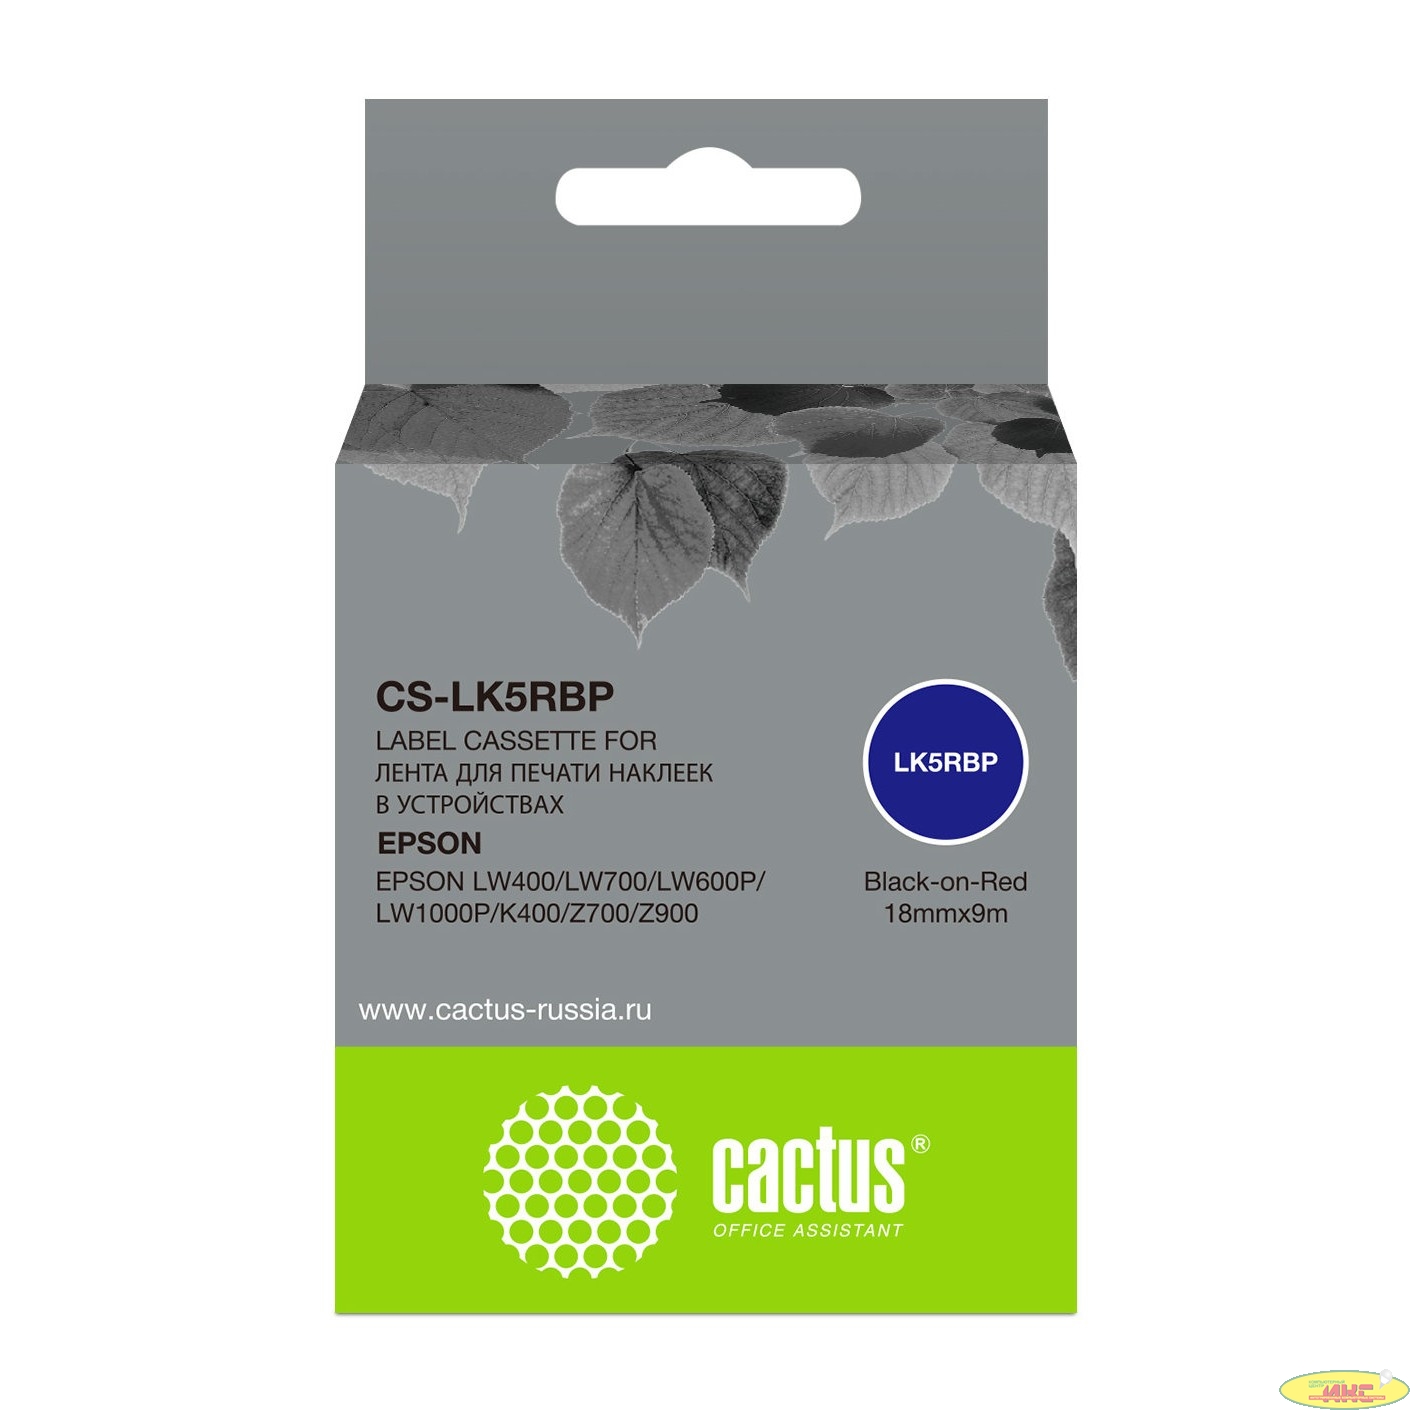 Картридж ленточный Cactus CS-LK5RBP черный для Epson LW400/LW700/LW600P/LW1000P/K400/Z700/Z900